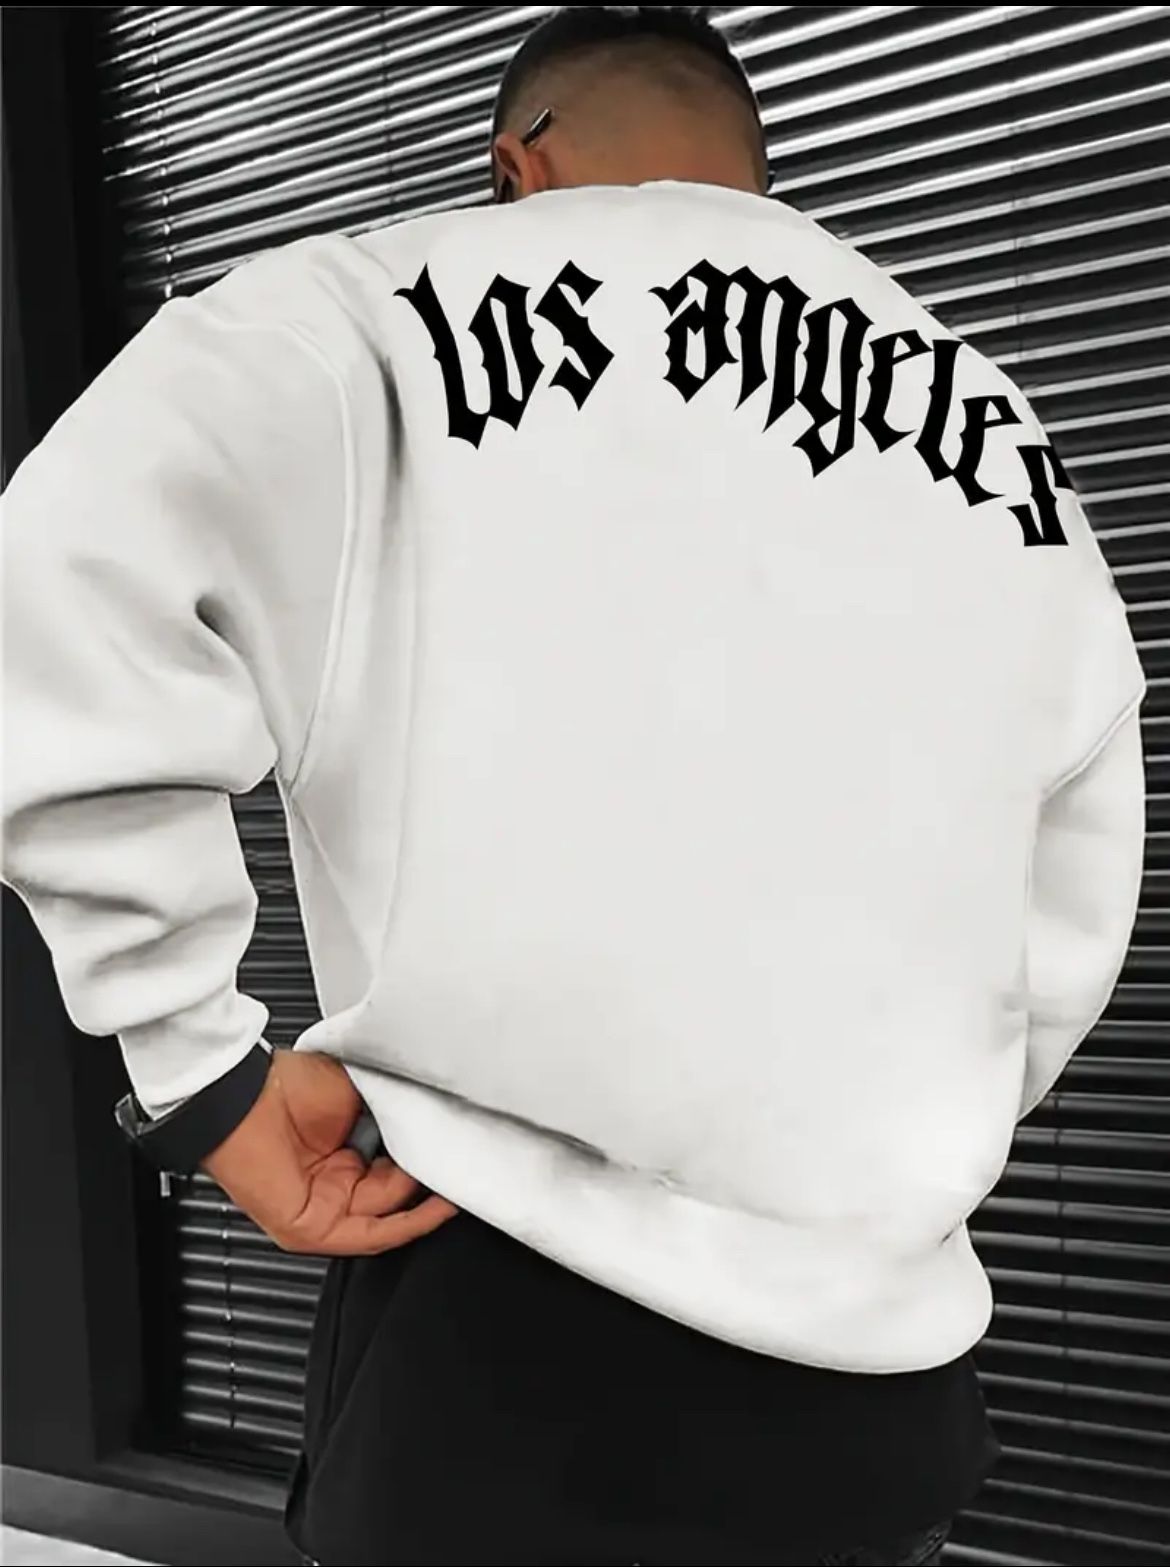 Los Angeles Crewneck Sweatshirt